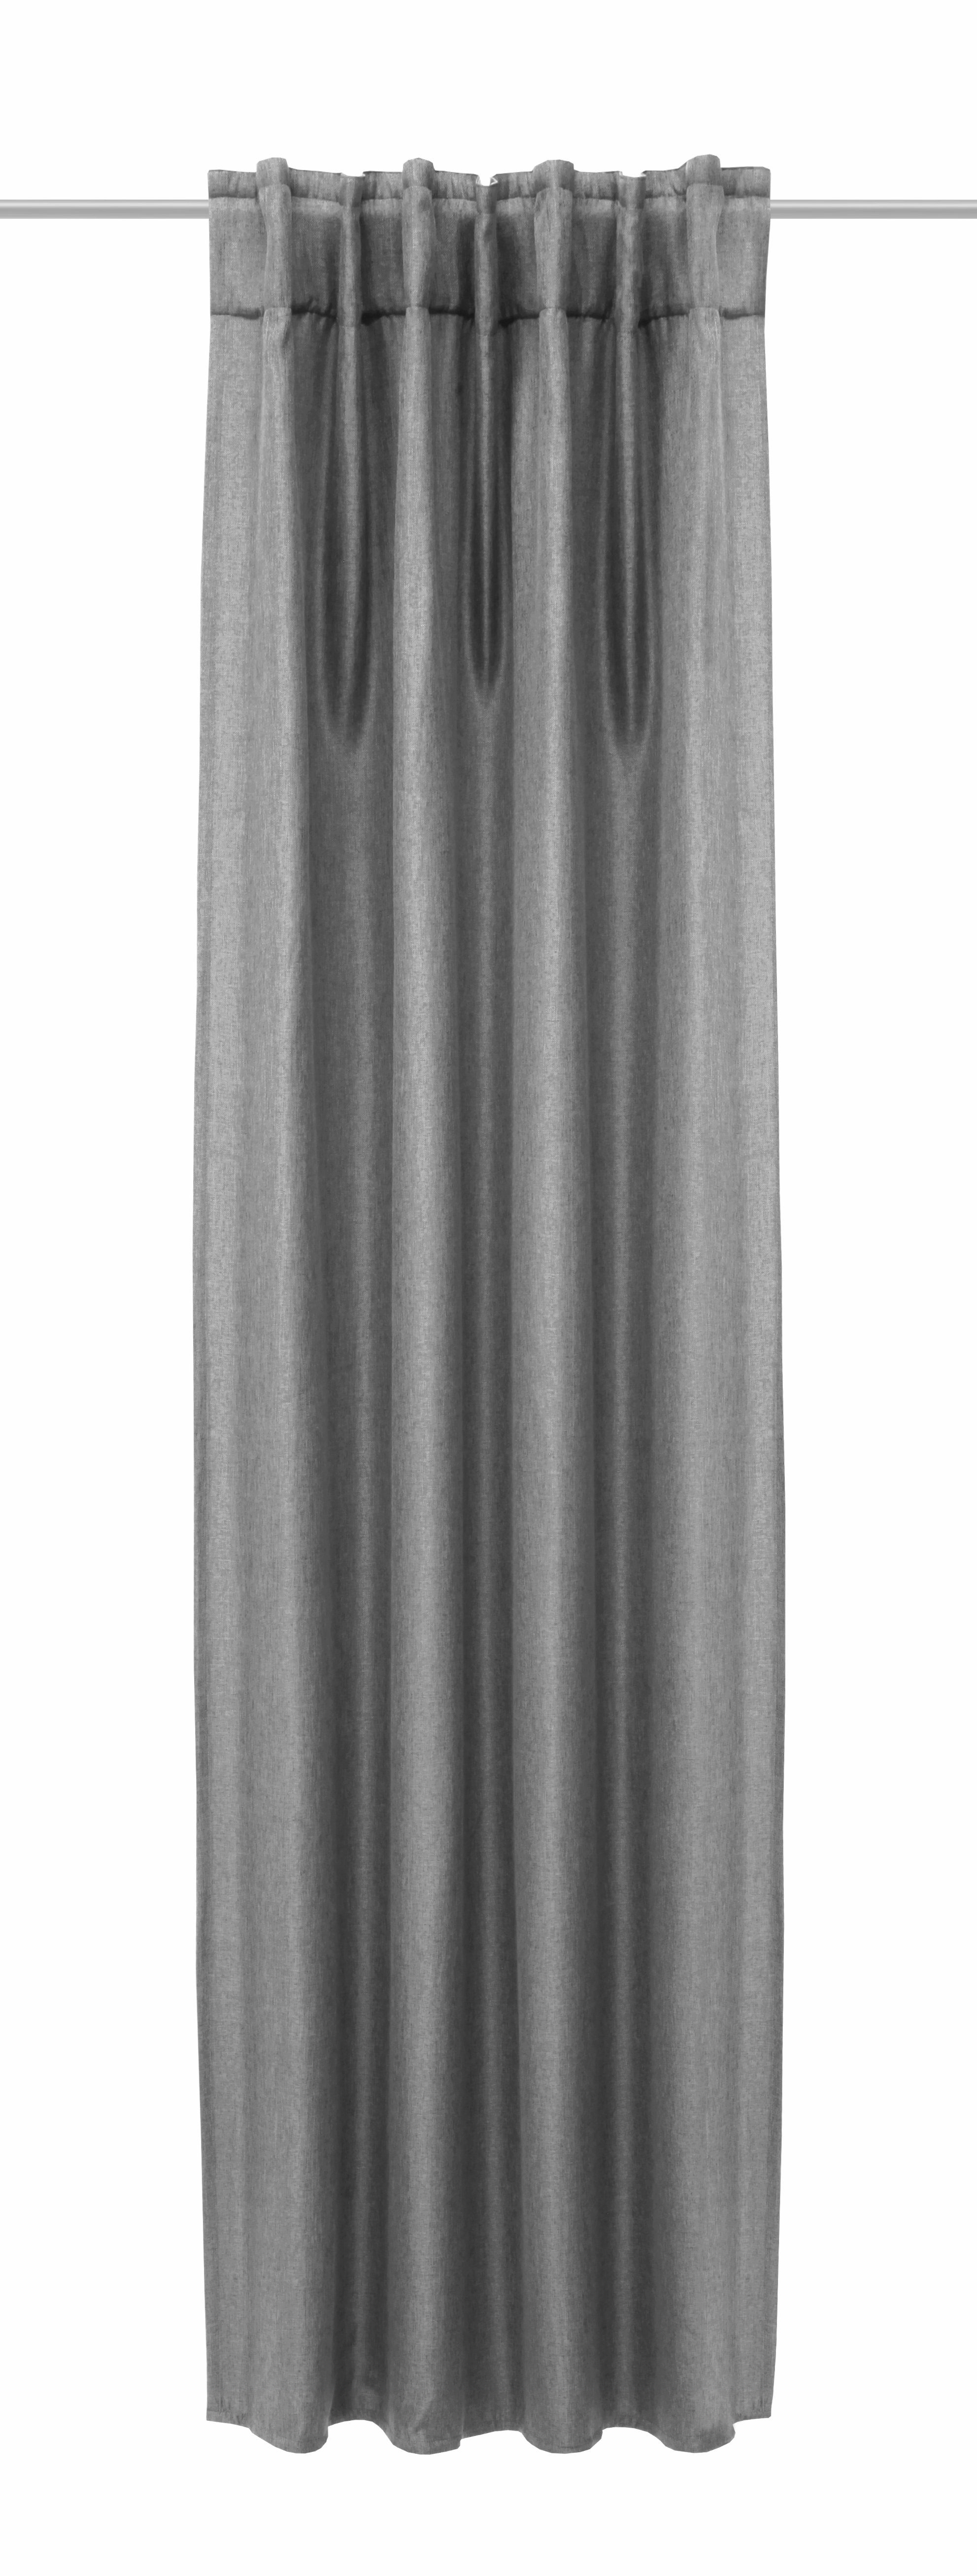 verdunkelnder Jolie Clever-Kauf-24, grau Leinenoptik, Vorhang Verdunkelungsvorhang Verdunkelungsvorhang